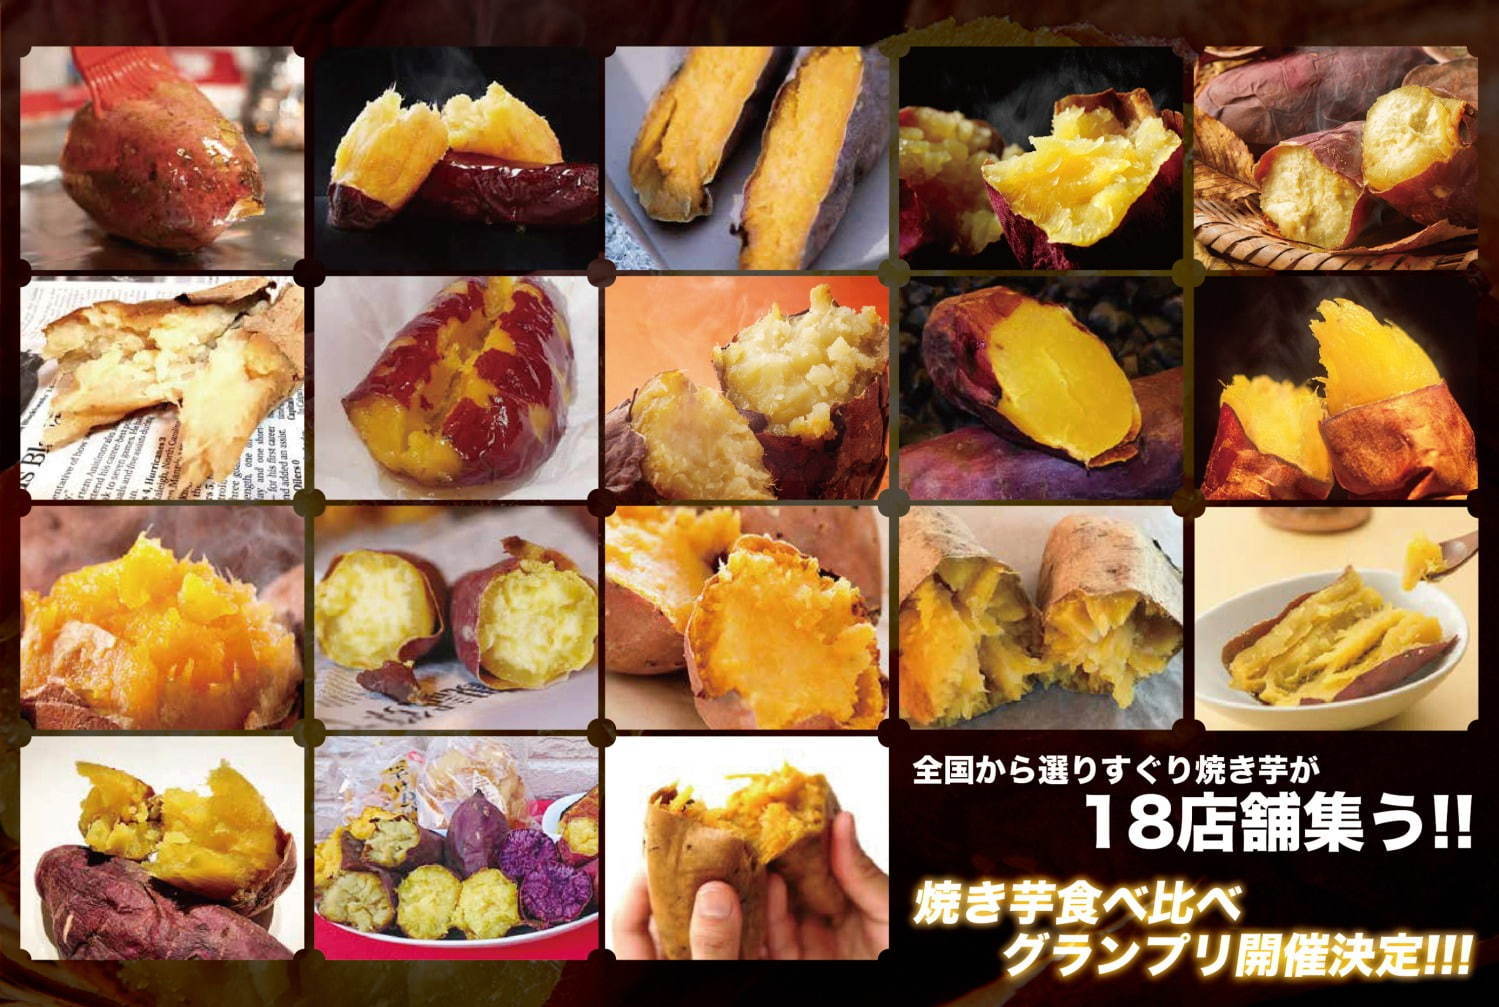 さつまいも博 最も美味しい やきいもが決まる全国焼き芋グランプリ 埼玉で開催 ファッションプレス